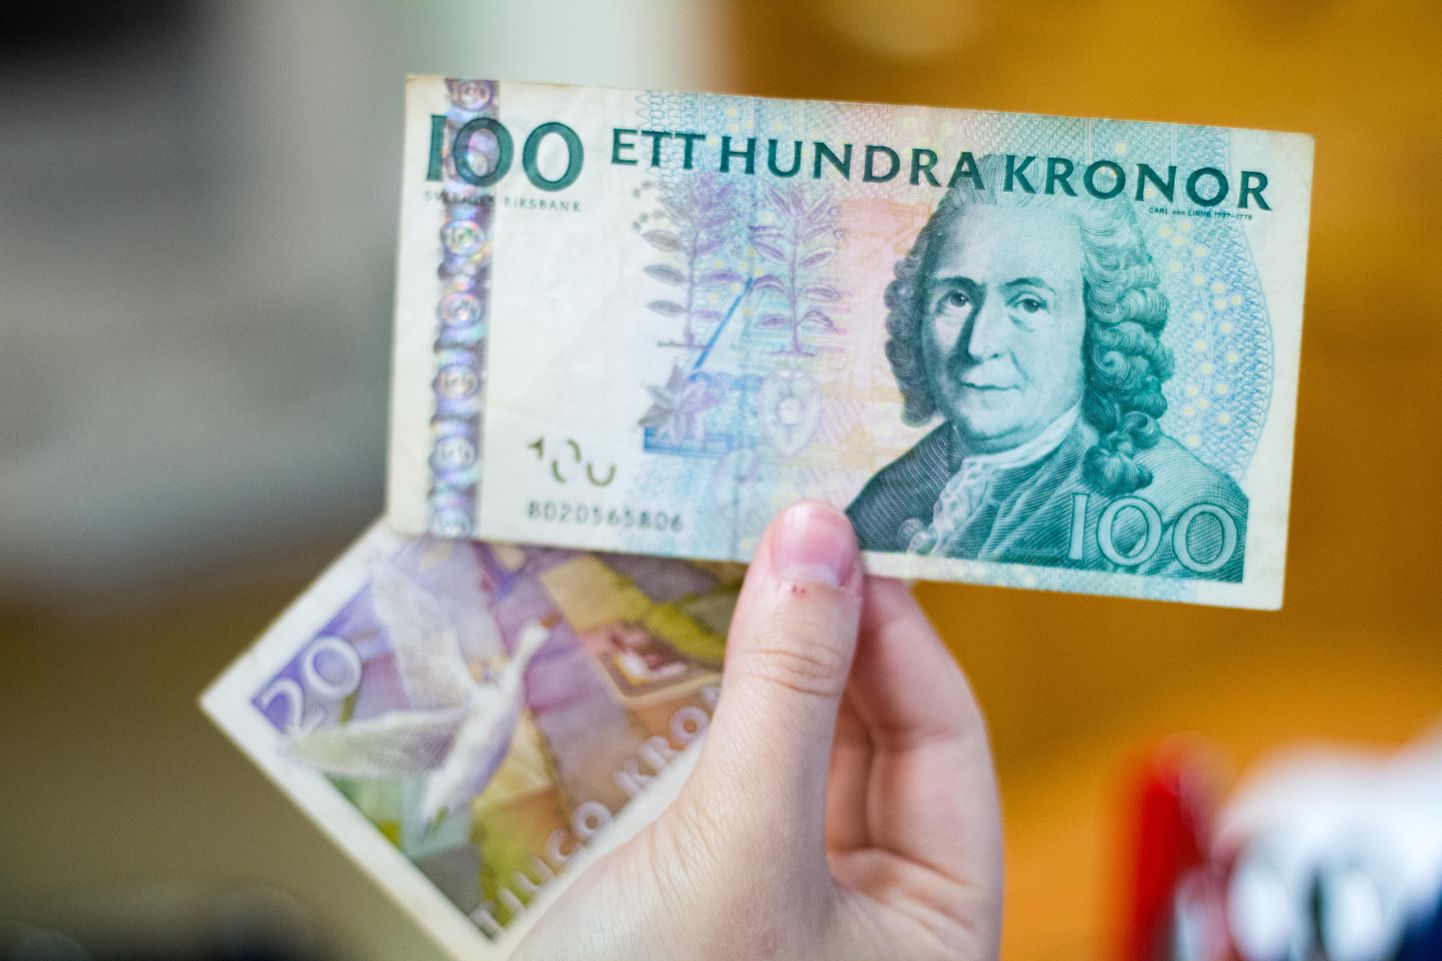 Järgmisena lähevad Rootsis vahetusse 100kroonised. Seega tasuks kuupäevadel silm peal hoida, et kauplustes ei tekiks segaseid olukordi aegunud rahaga.